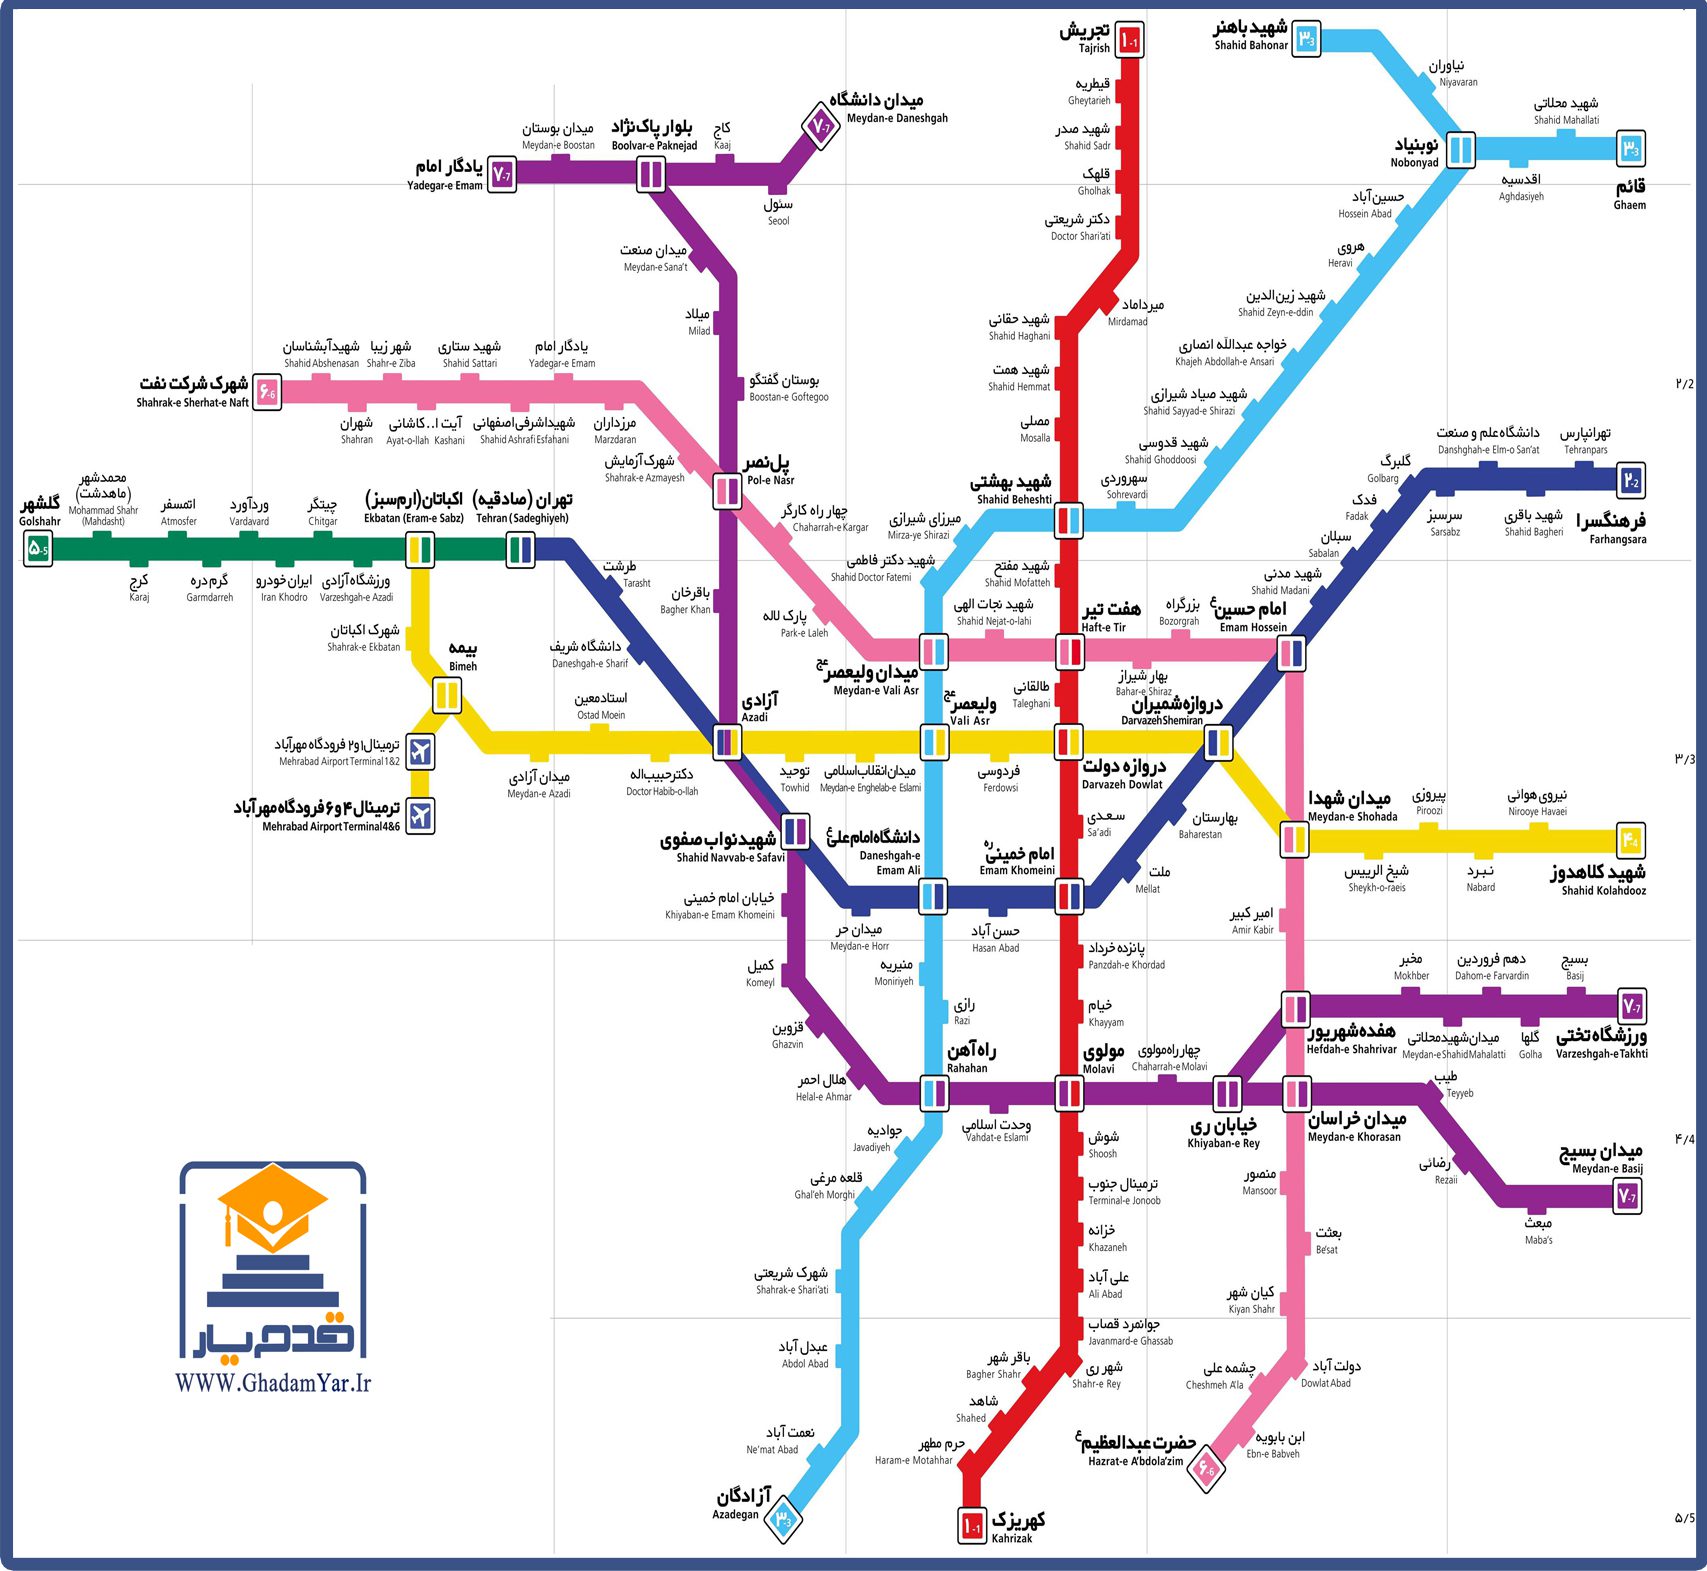 نقشه مترو تهران - قدم یار